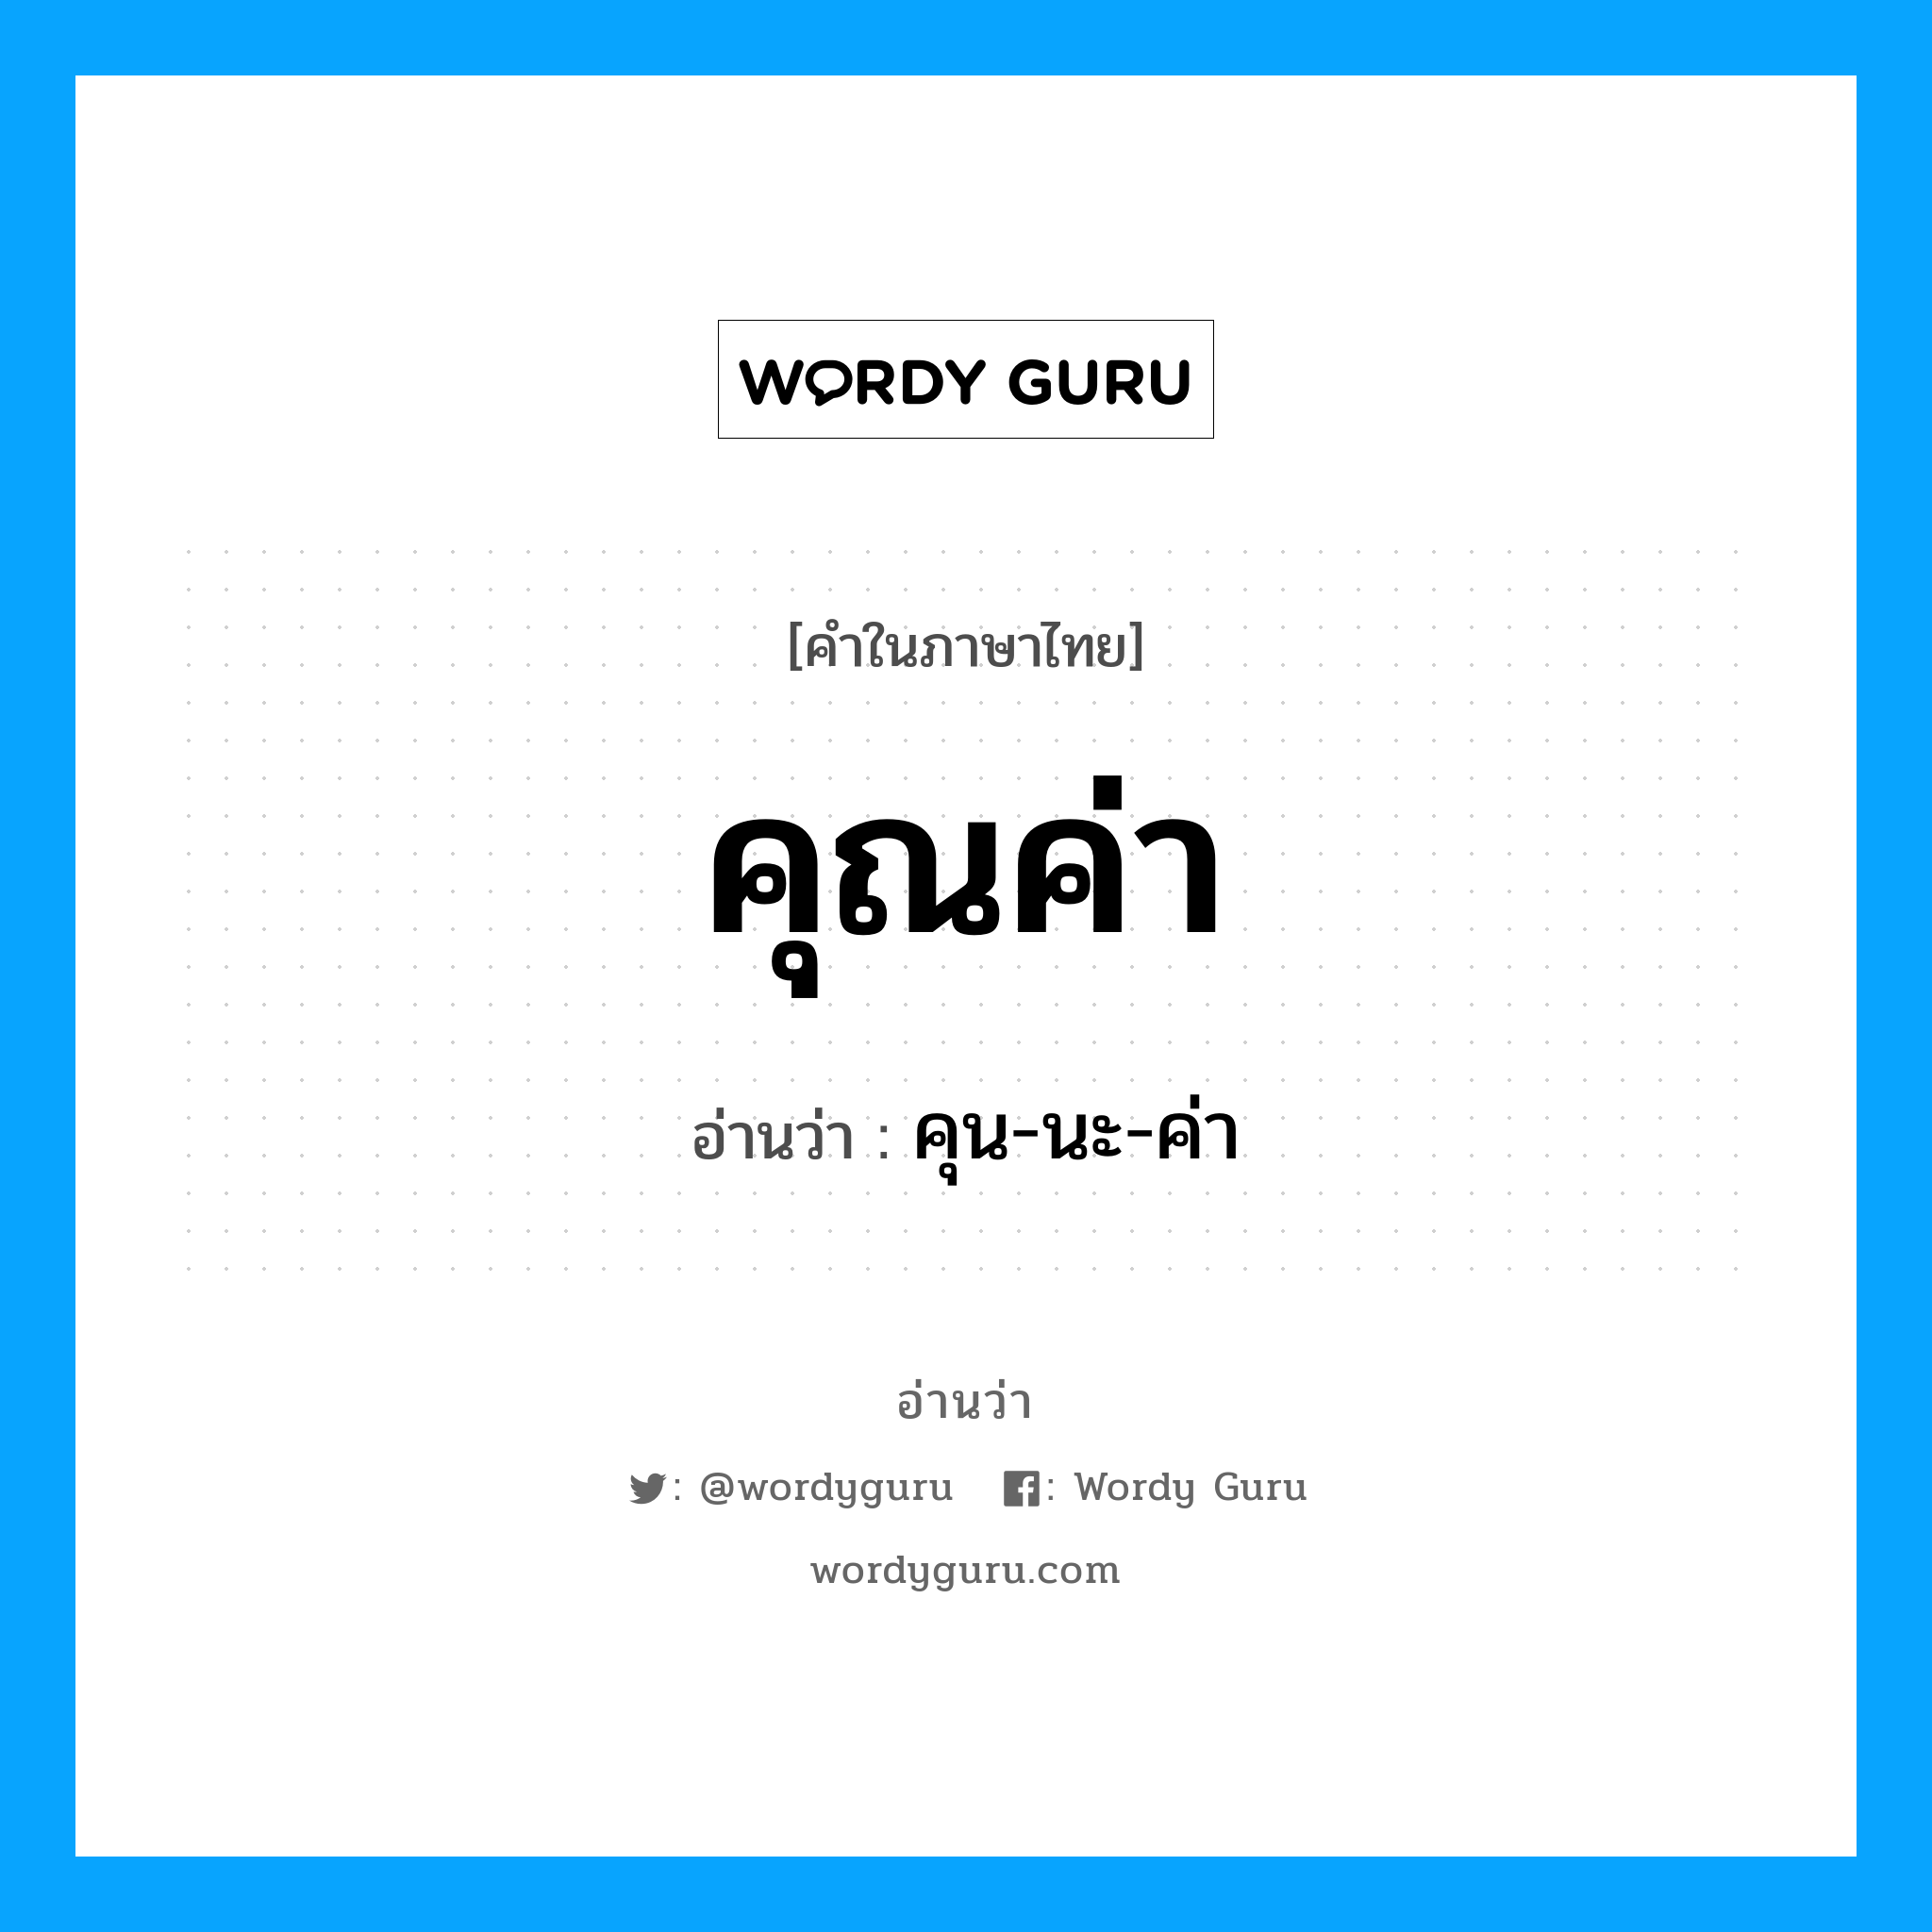 คุน-นะ-ค่า เป็นคำอ่านของคำไหน?, คำในภาษาไทย คุน-นะ-ค่า อ่านว่า คุณค่า